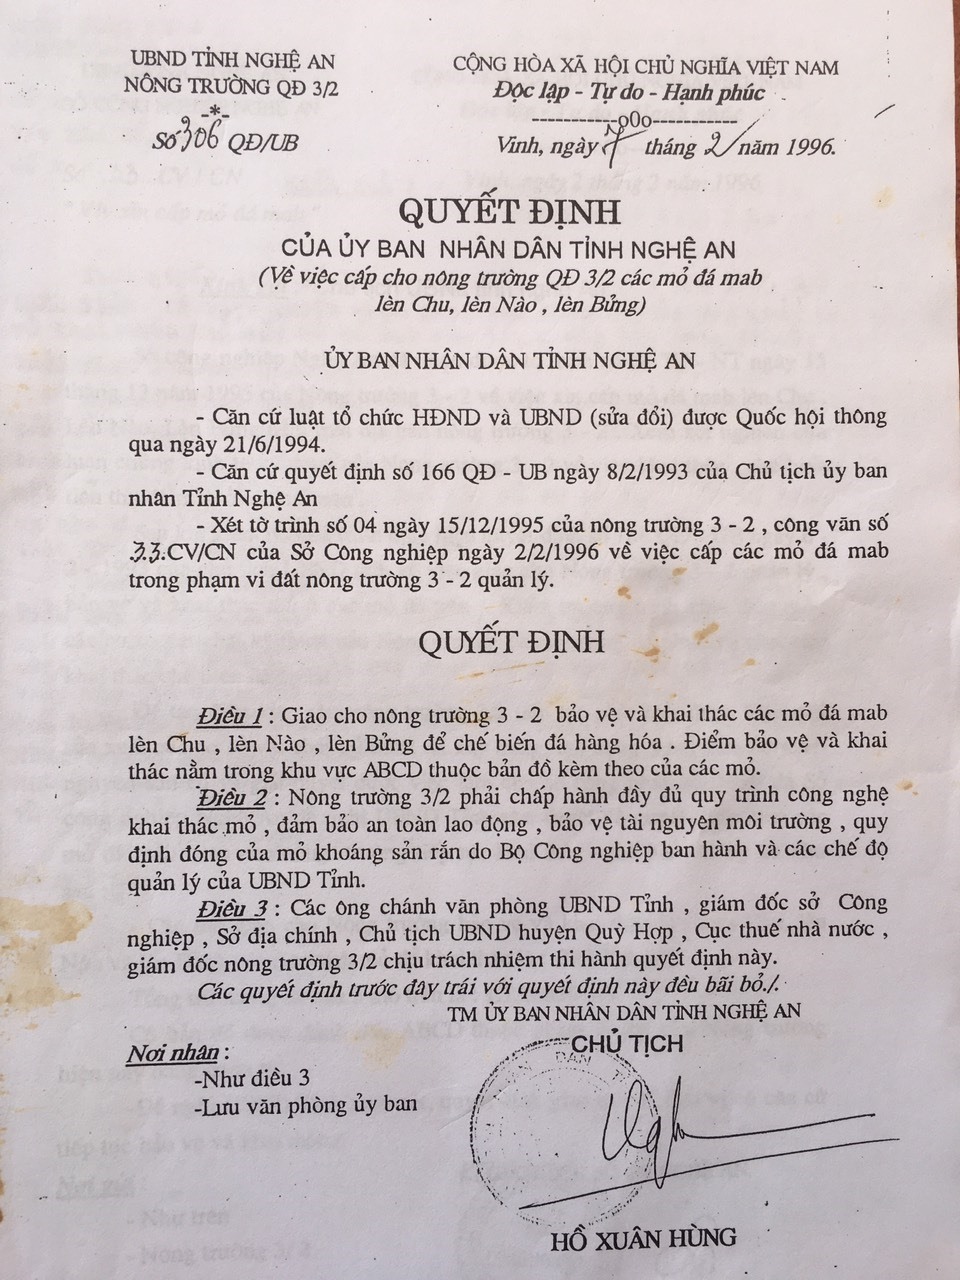 Quyết định của UBND tỉnh Nghệ An cho phép Nông trường 3-2 khai thác đá tại mỏ Lèn Chu, lèn Nào, lèn Bửng (huyện Quỳ Hợp) từ tháng 2/1996. Ảnh: HĐ